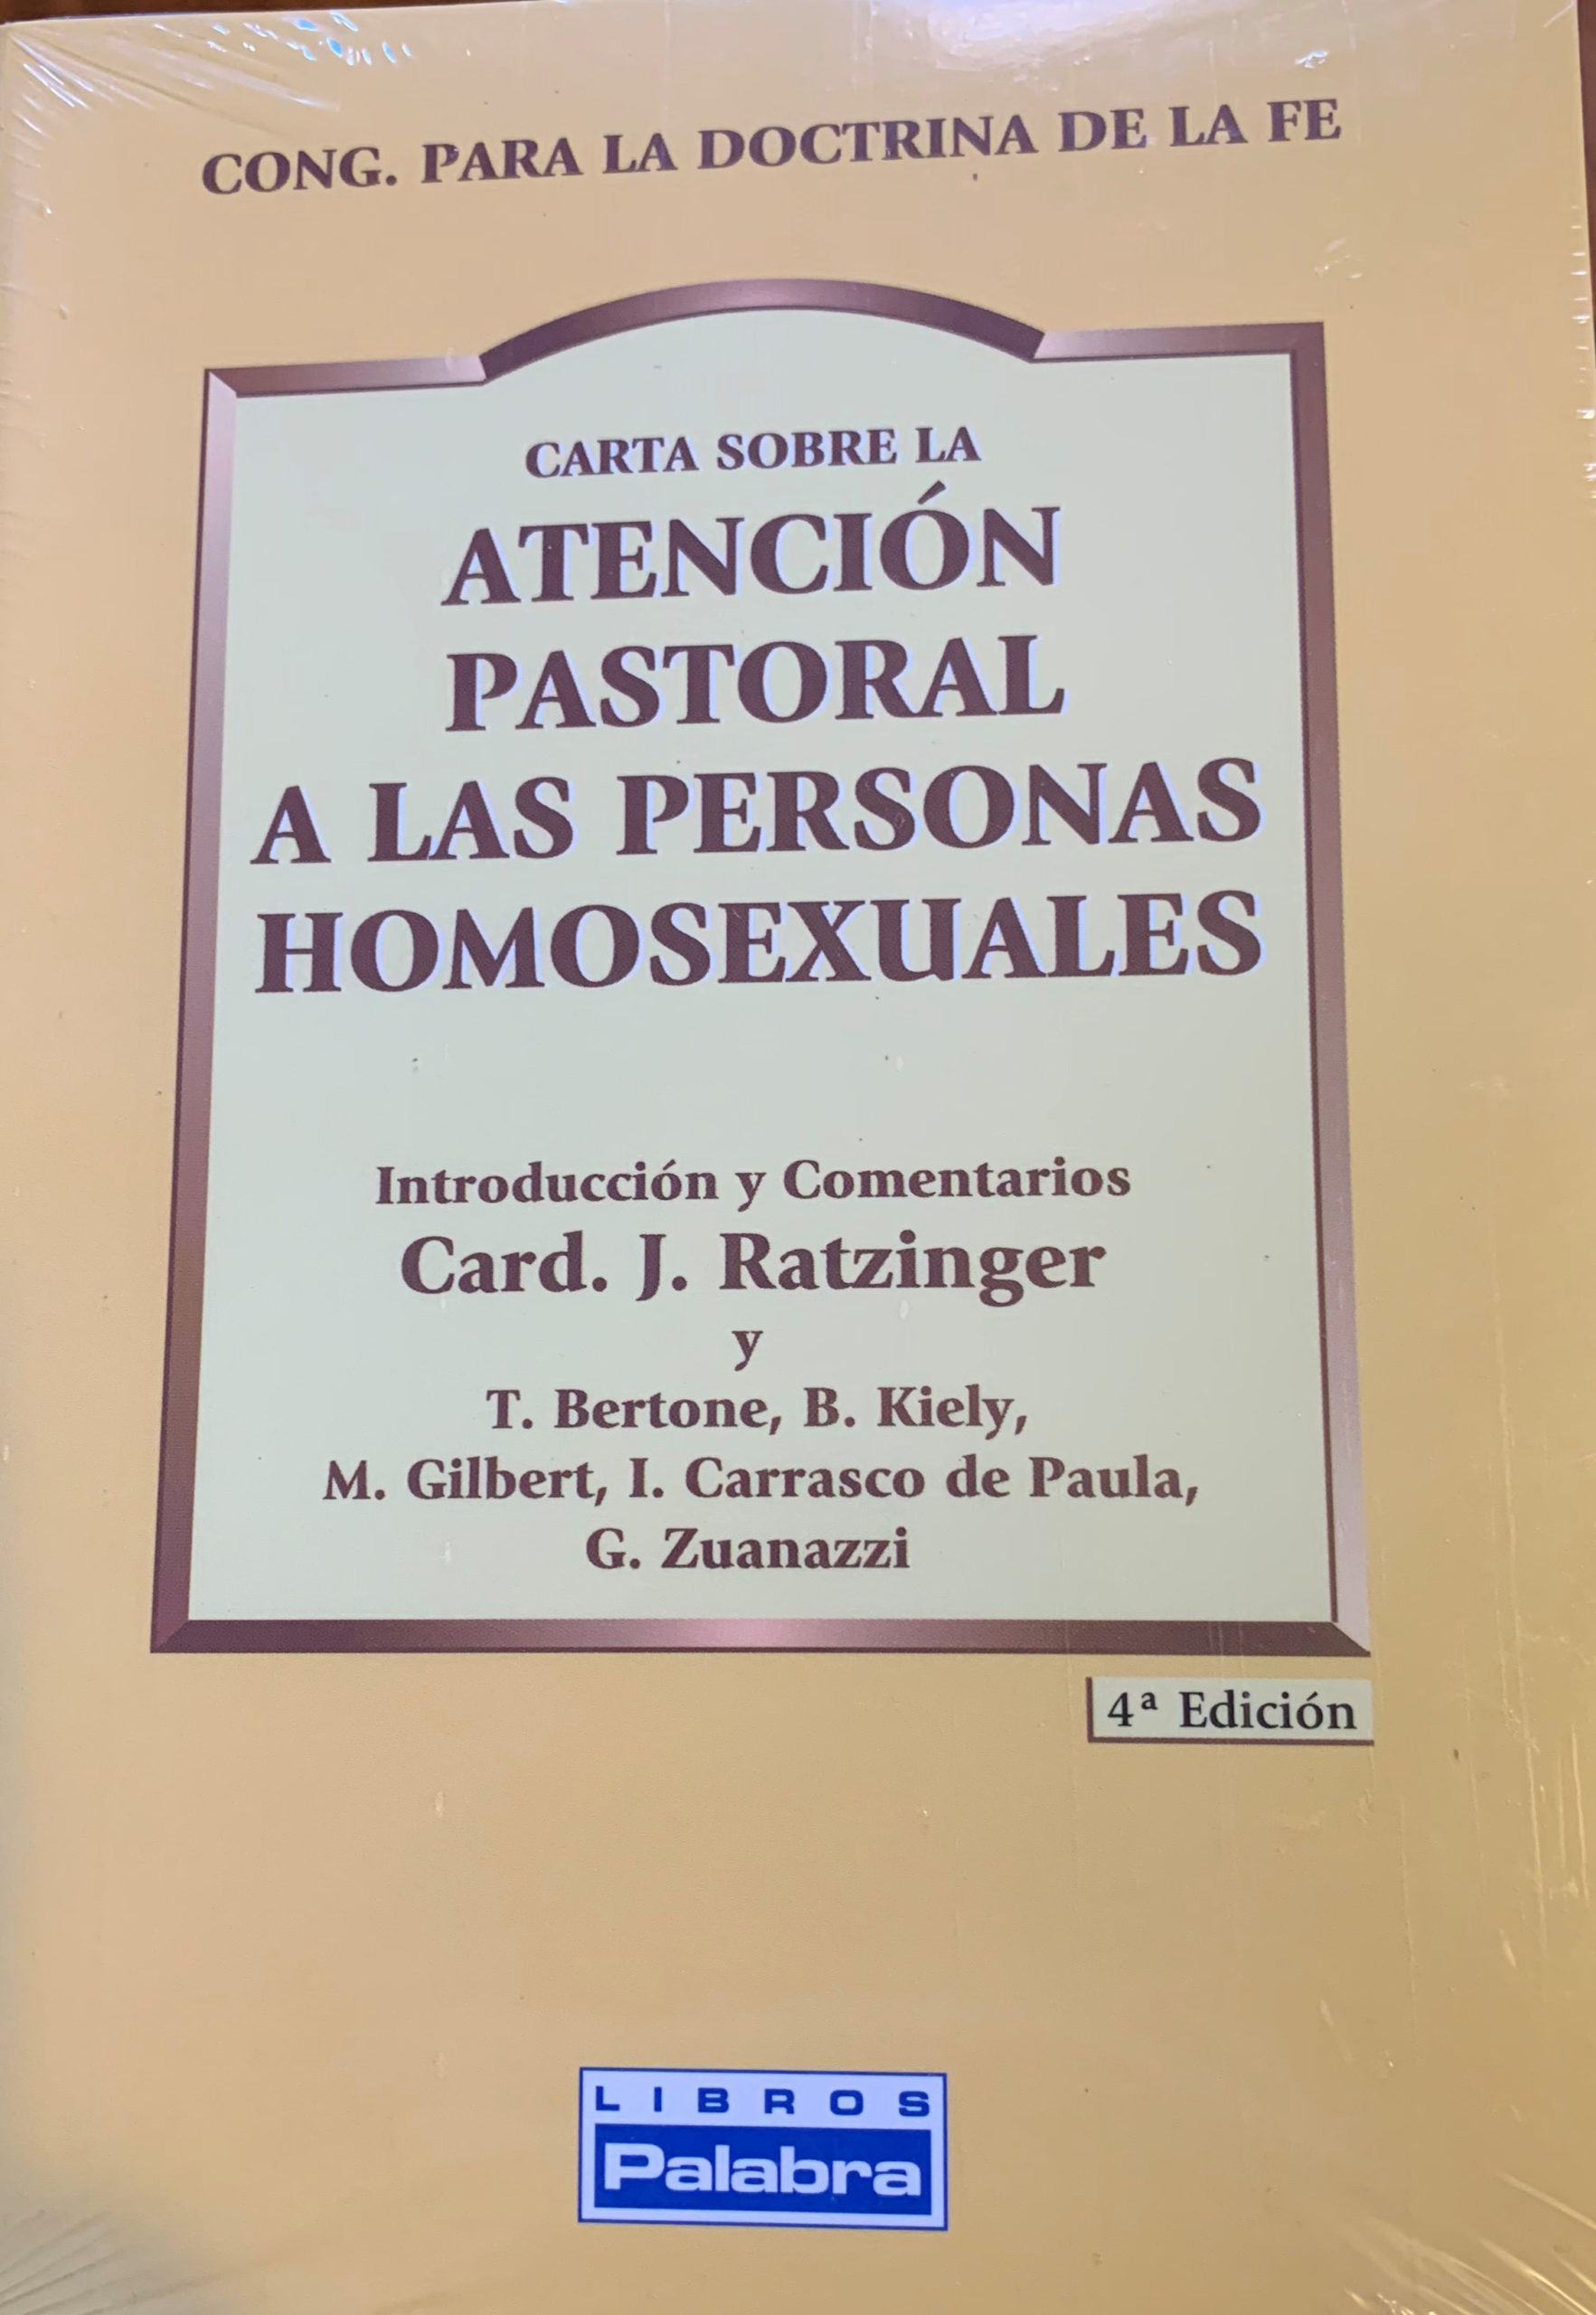 Carta Sobre la Atencion Pastoral a las Personas Homosexuales